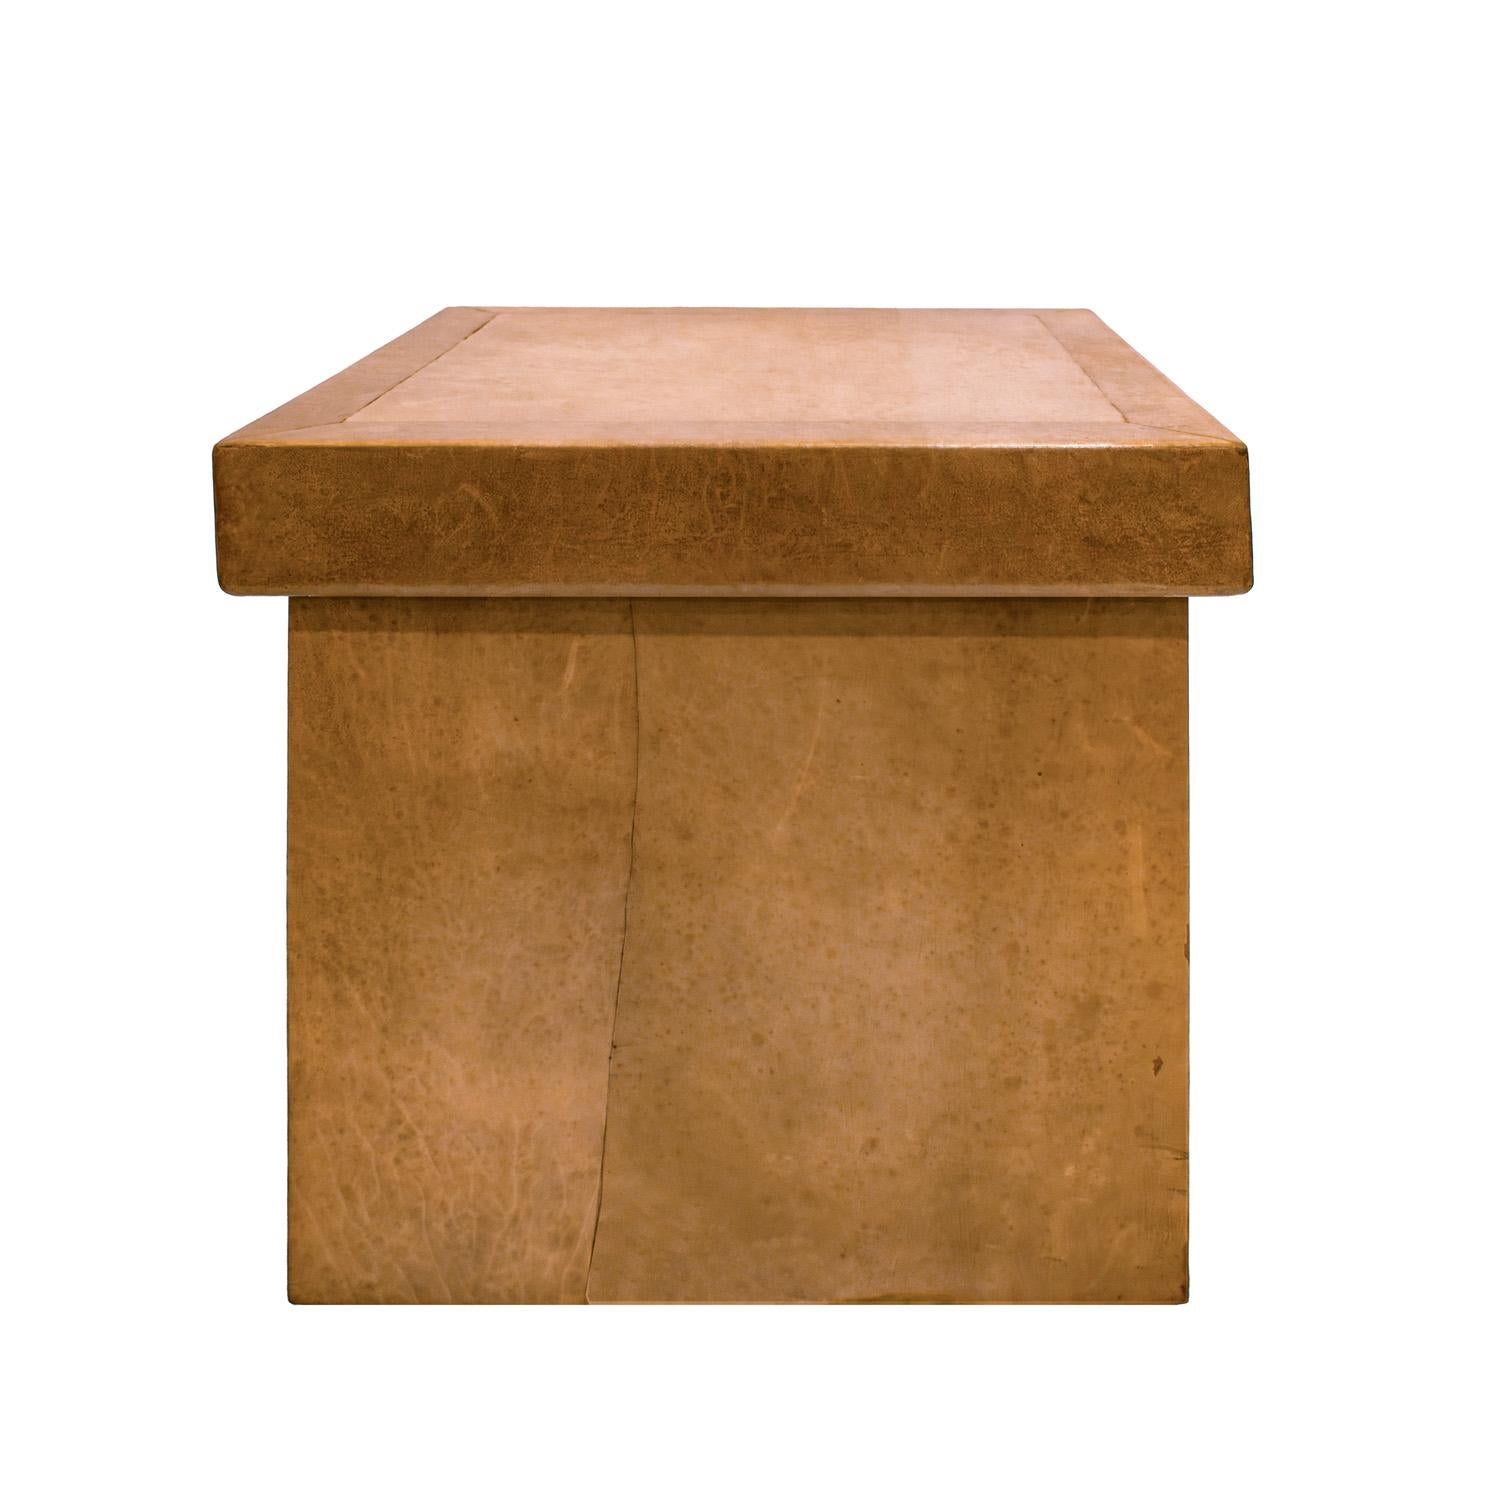 Außergewöhnlicher Box Table mit braunem Leder außen und innen von Karl Springer, Amerikaner 1976-78.  Der Boden ist mit Seidenmoiré überzogen. Dieser wurde als Prototyp hergestellt.  Die Hautarbeit ist, wie bei allen Springer-Stücken,